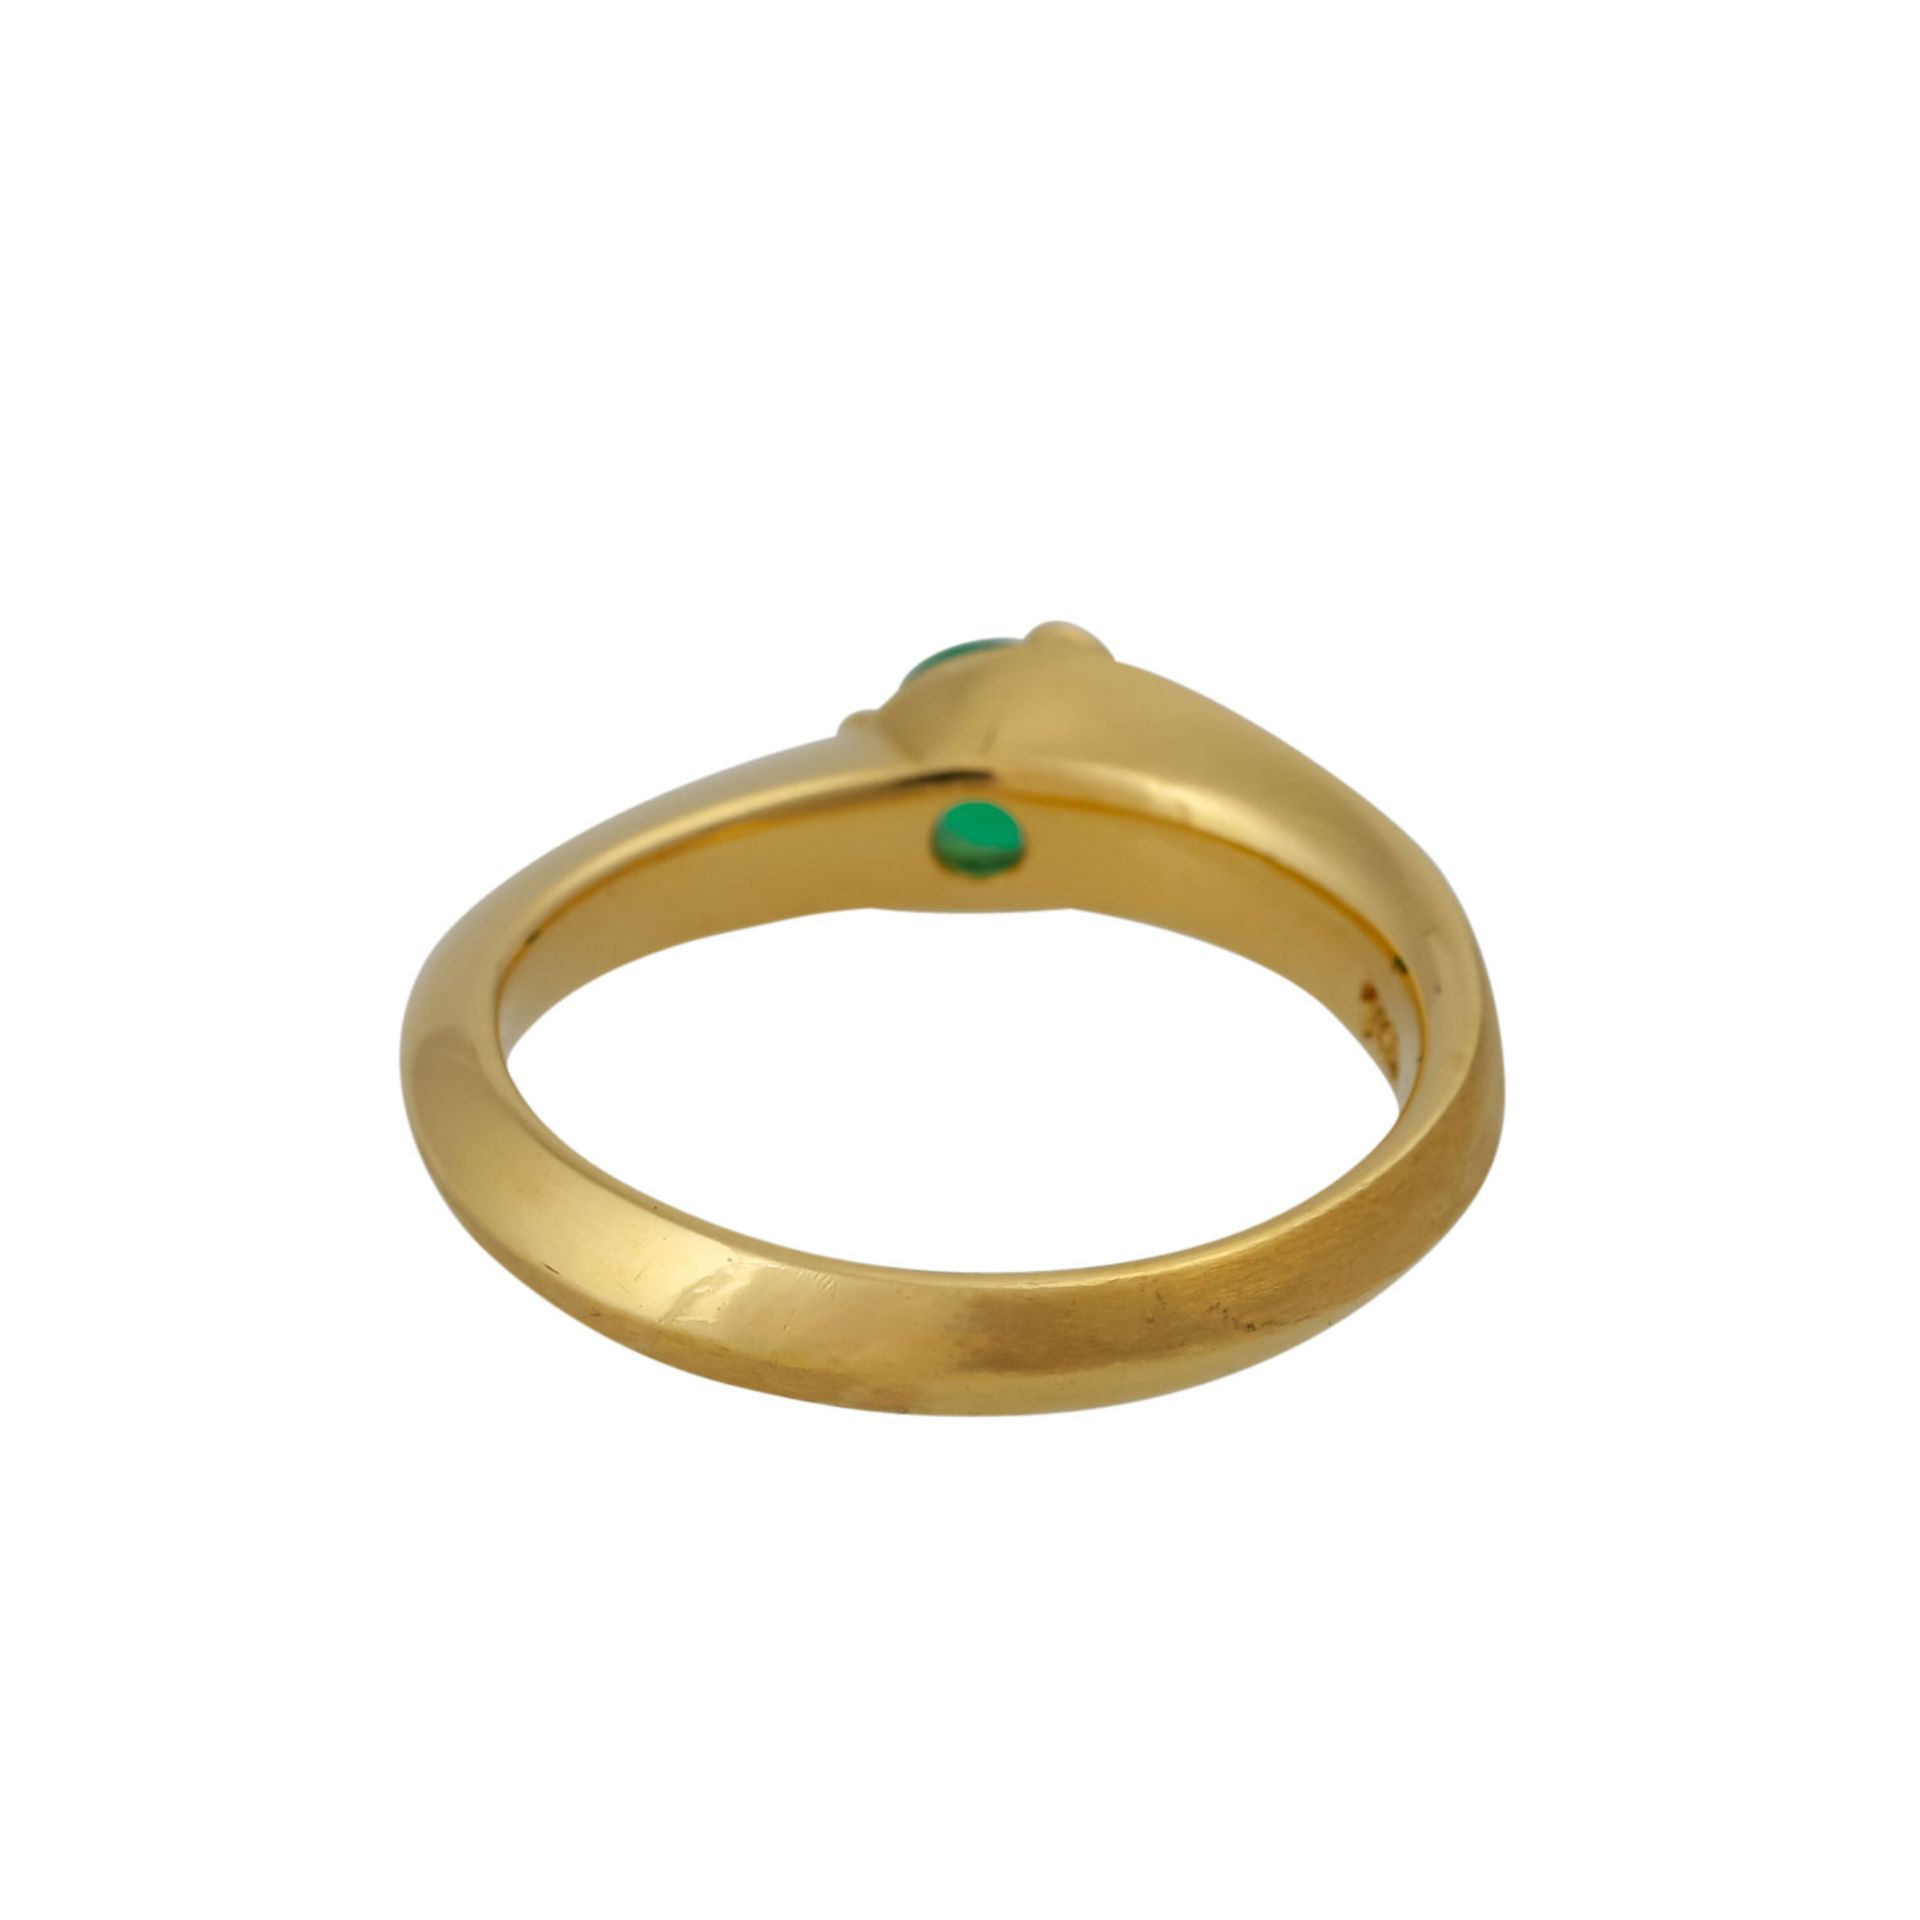 Ring mit rund facettiertem Smaragd, ca. 0,3 ct, feine Farbe und Leuchtkraft, GG 18K, 5,5 g, RW: 53, - Image 4 of 4